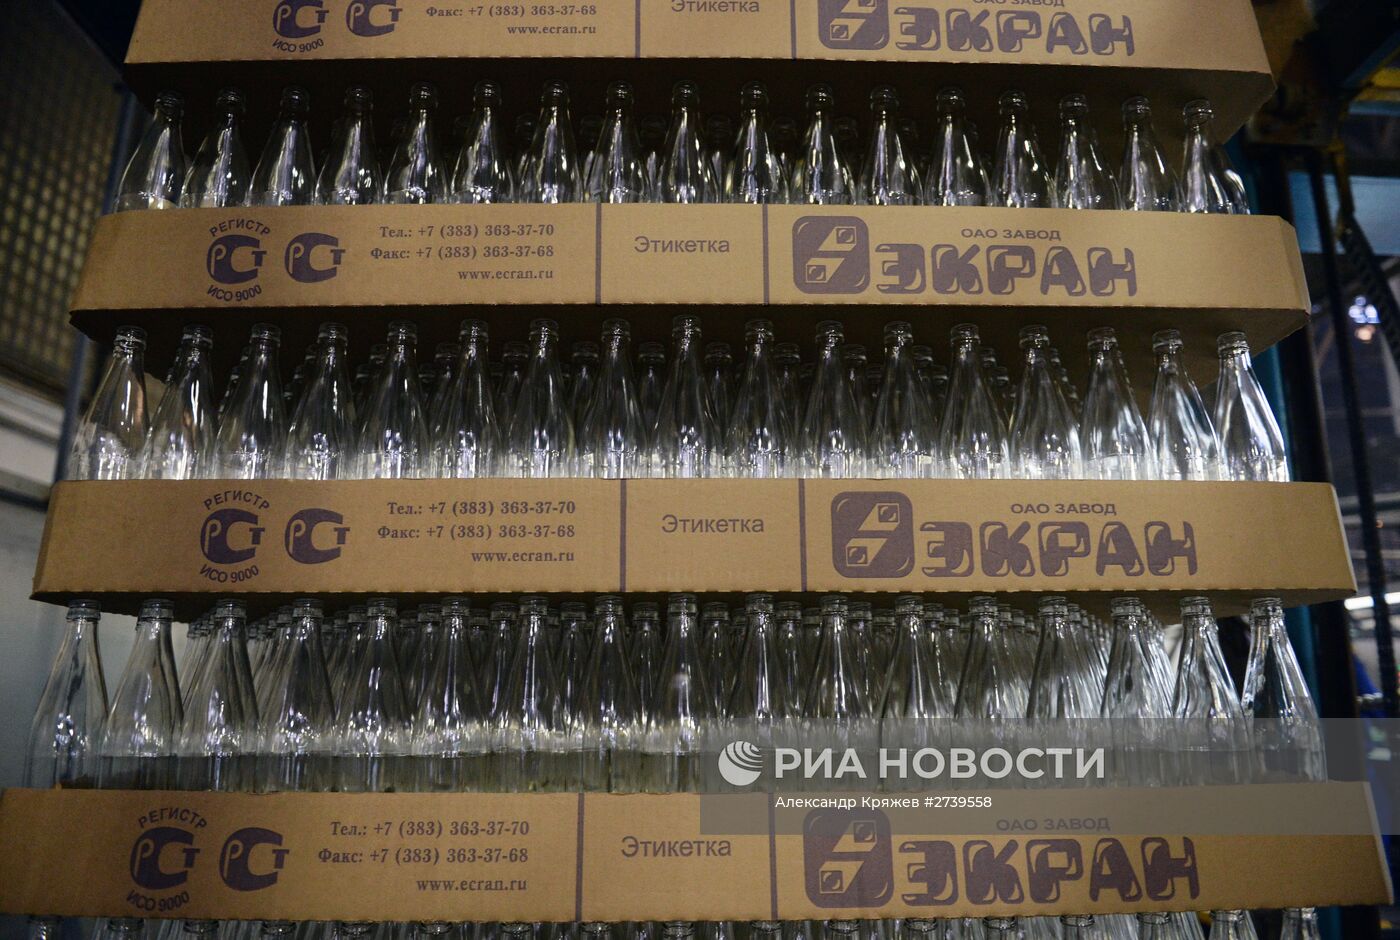 Модернизация и расширение производства на заводе "Экран" в Новосибирской области